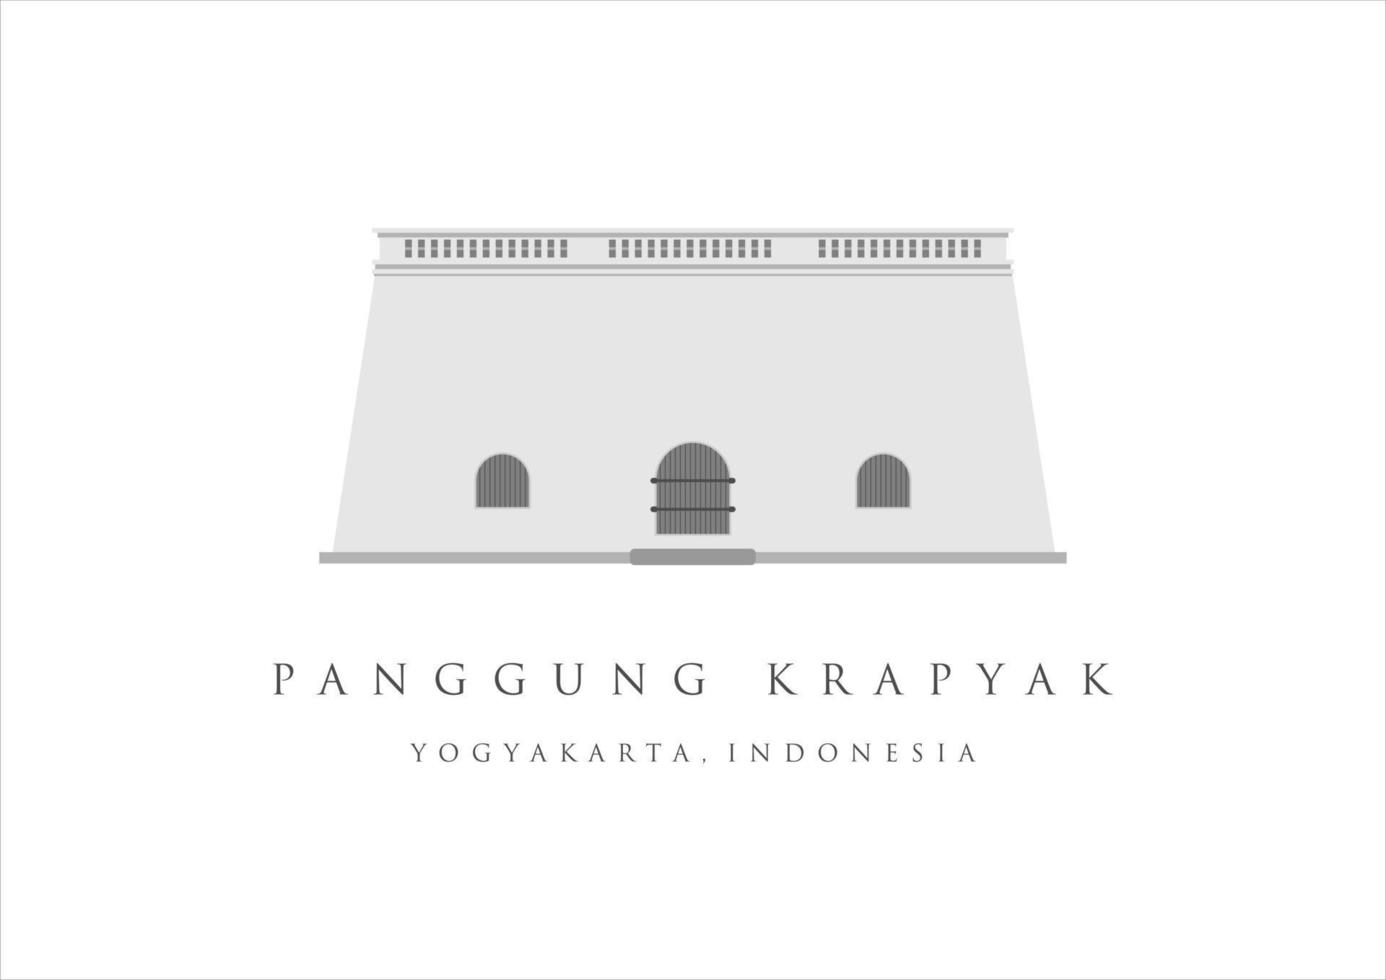 panggung krapyak landmärke byggnad av yogyakarta. arv turism av Indonesien. jogjakarta gammal byggnad vektor illustration